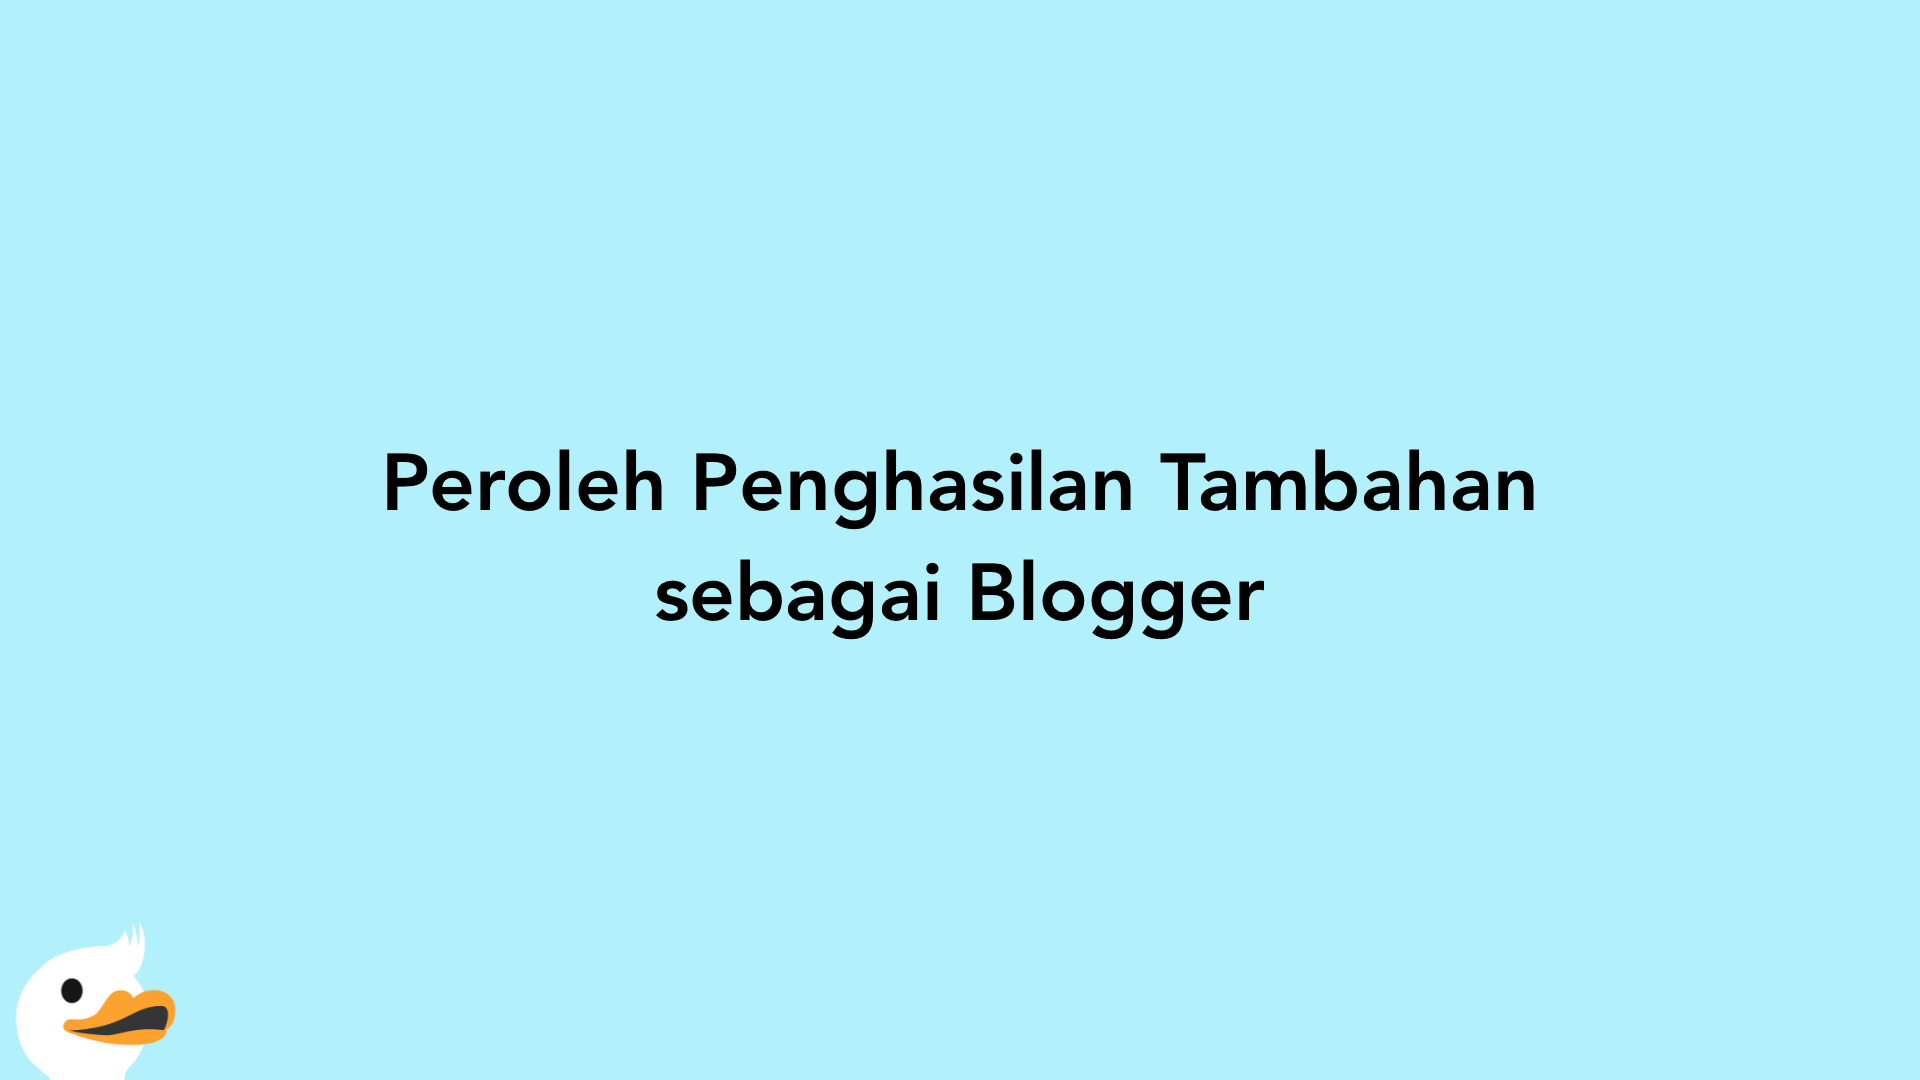 Peroleh Penghasilan Tambahan sebagai Blogger